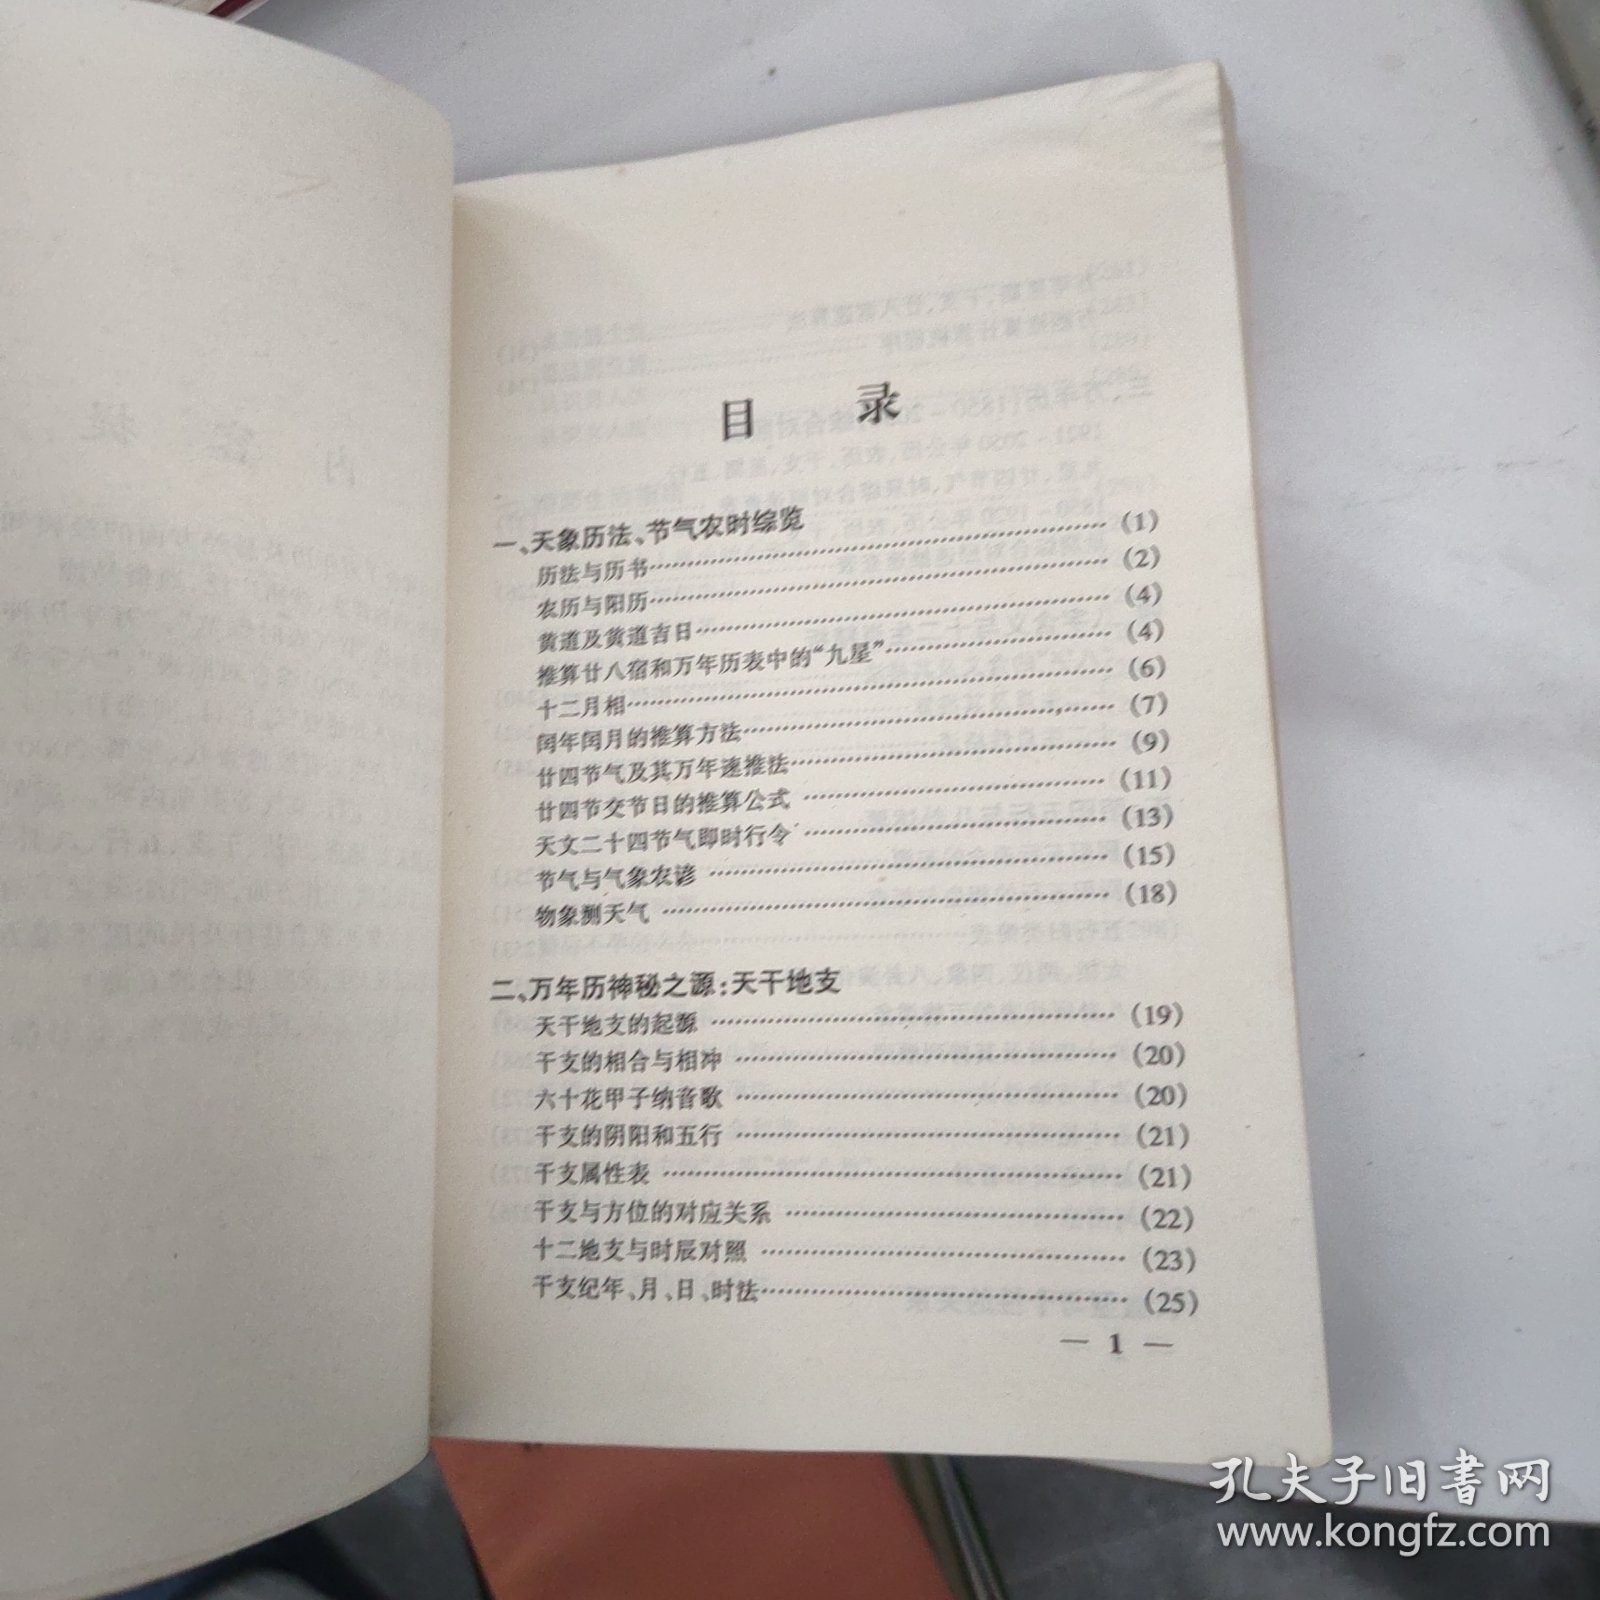 中华民历通书:1850～2050:珍藏版